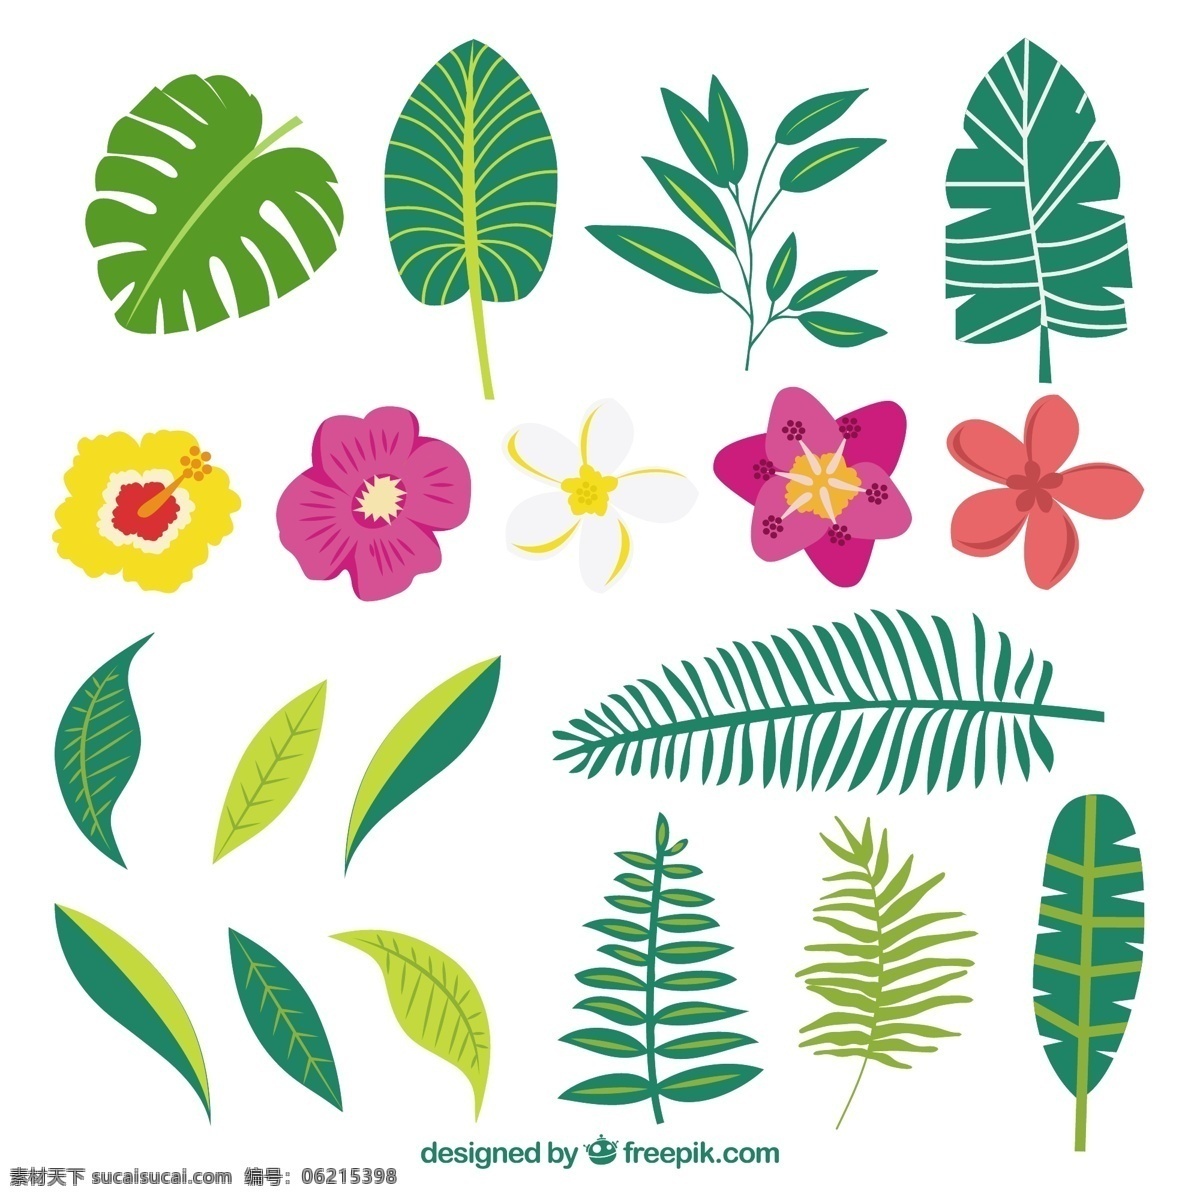 手工 绘制 各种 植物 奇花 花 树 鲜花 手 自然 春天 手绘 叶 棕榈 热带 开花 春 美丽的 抽纱 野